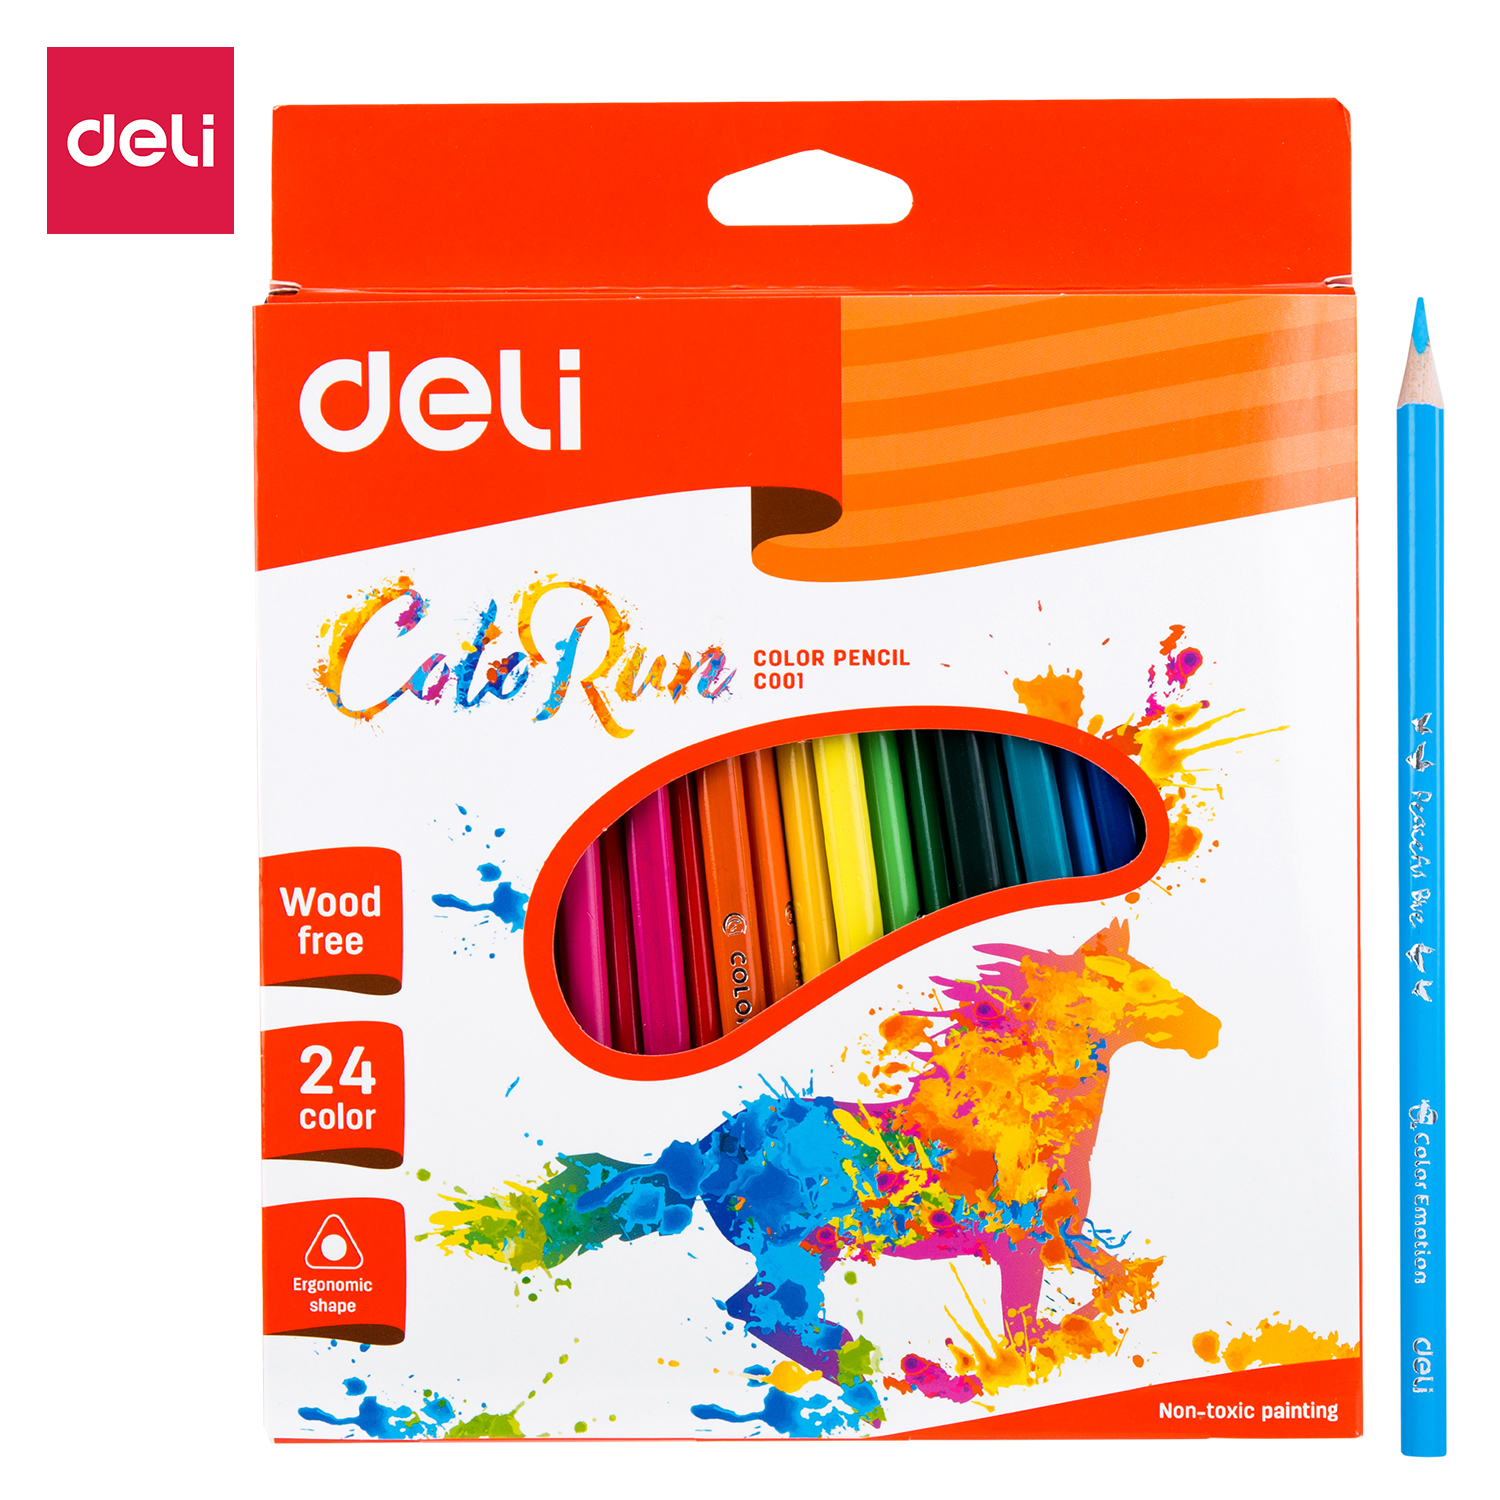 Deli-EC00120 Colored Pencil